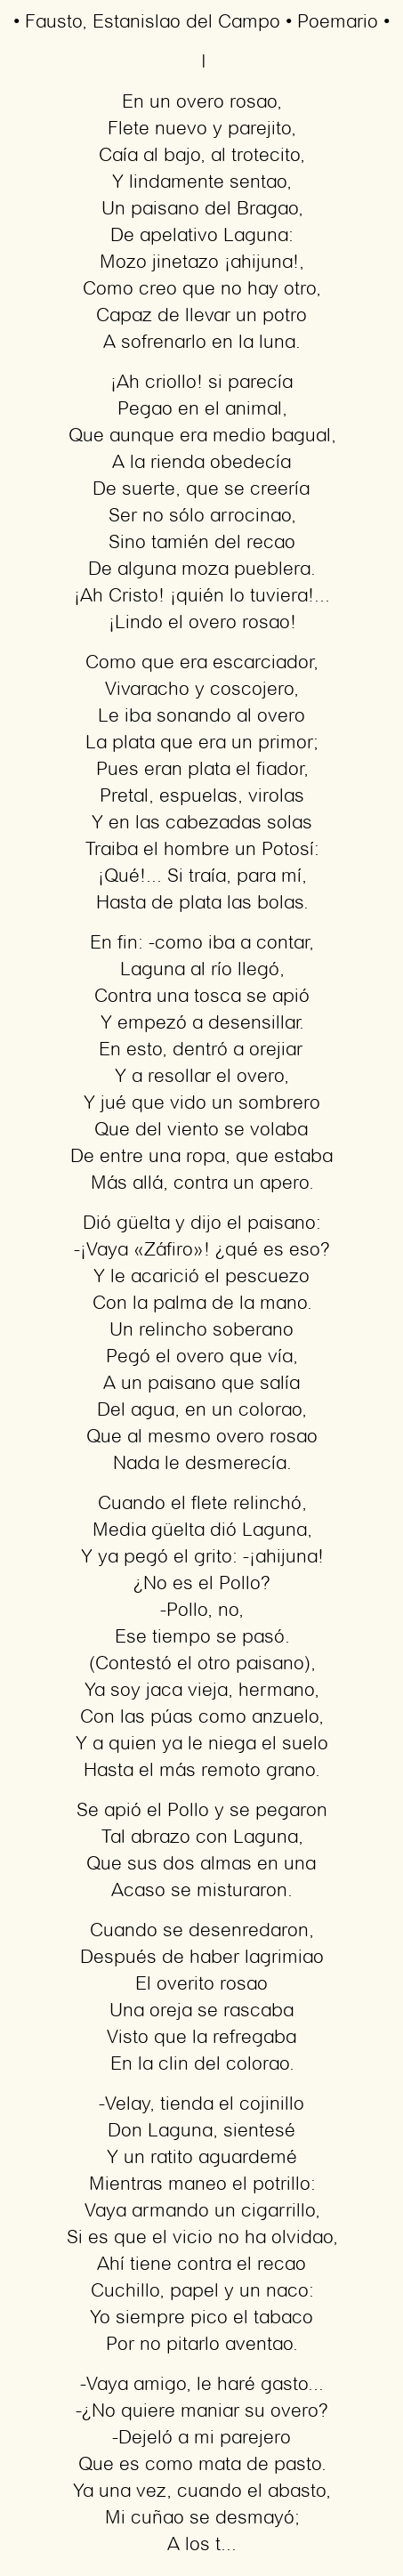 Imagen con el poema Fausto, por Estanislao del Campo